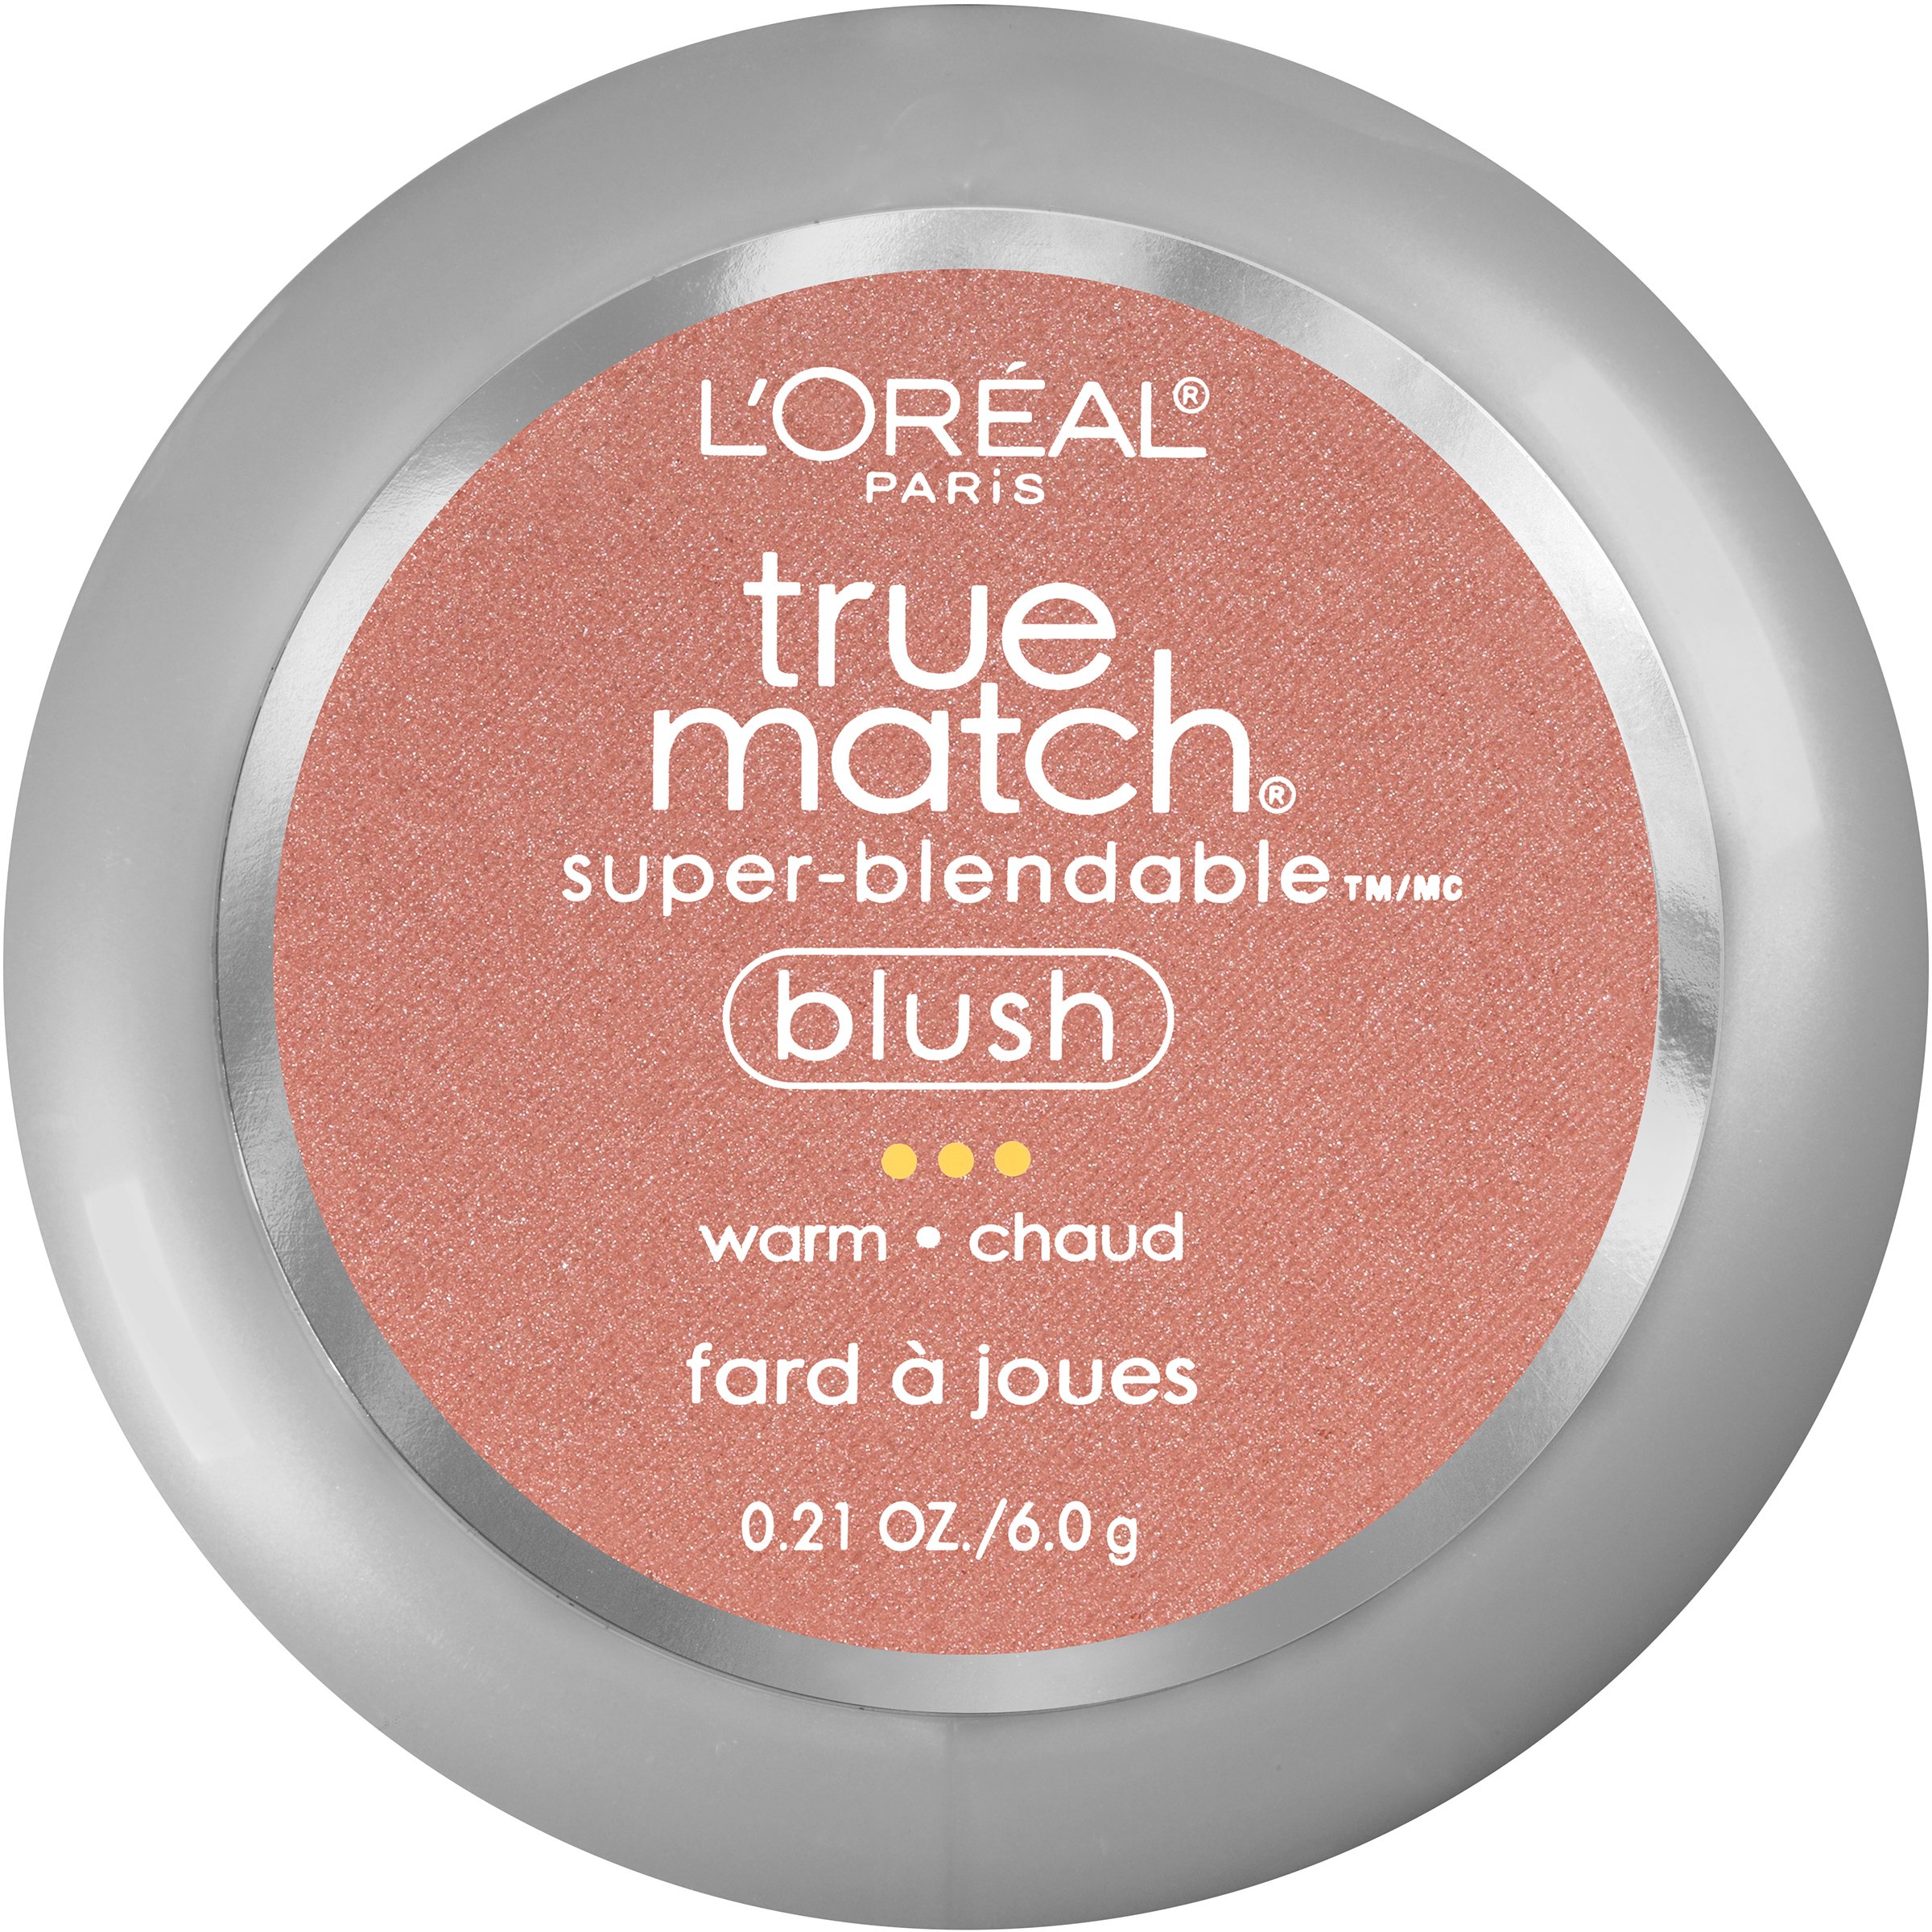 L'Oréal Paris True Match Super-Blendable Blush, Subtle Sable - Shop